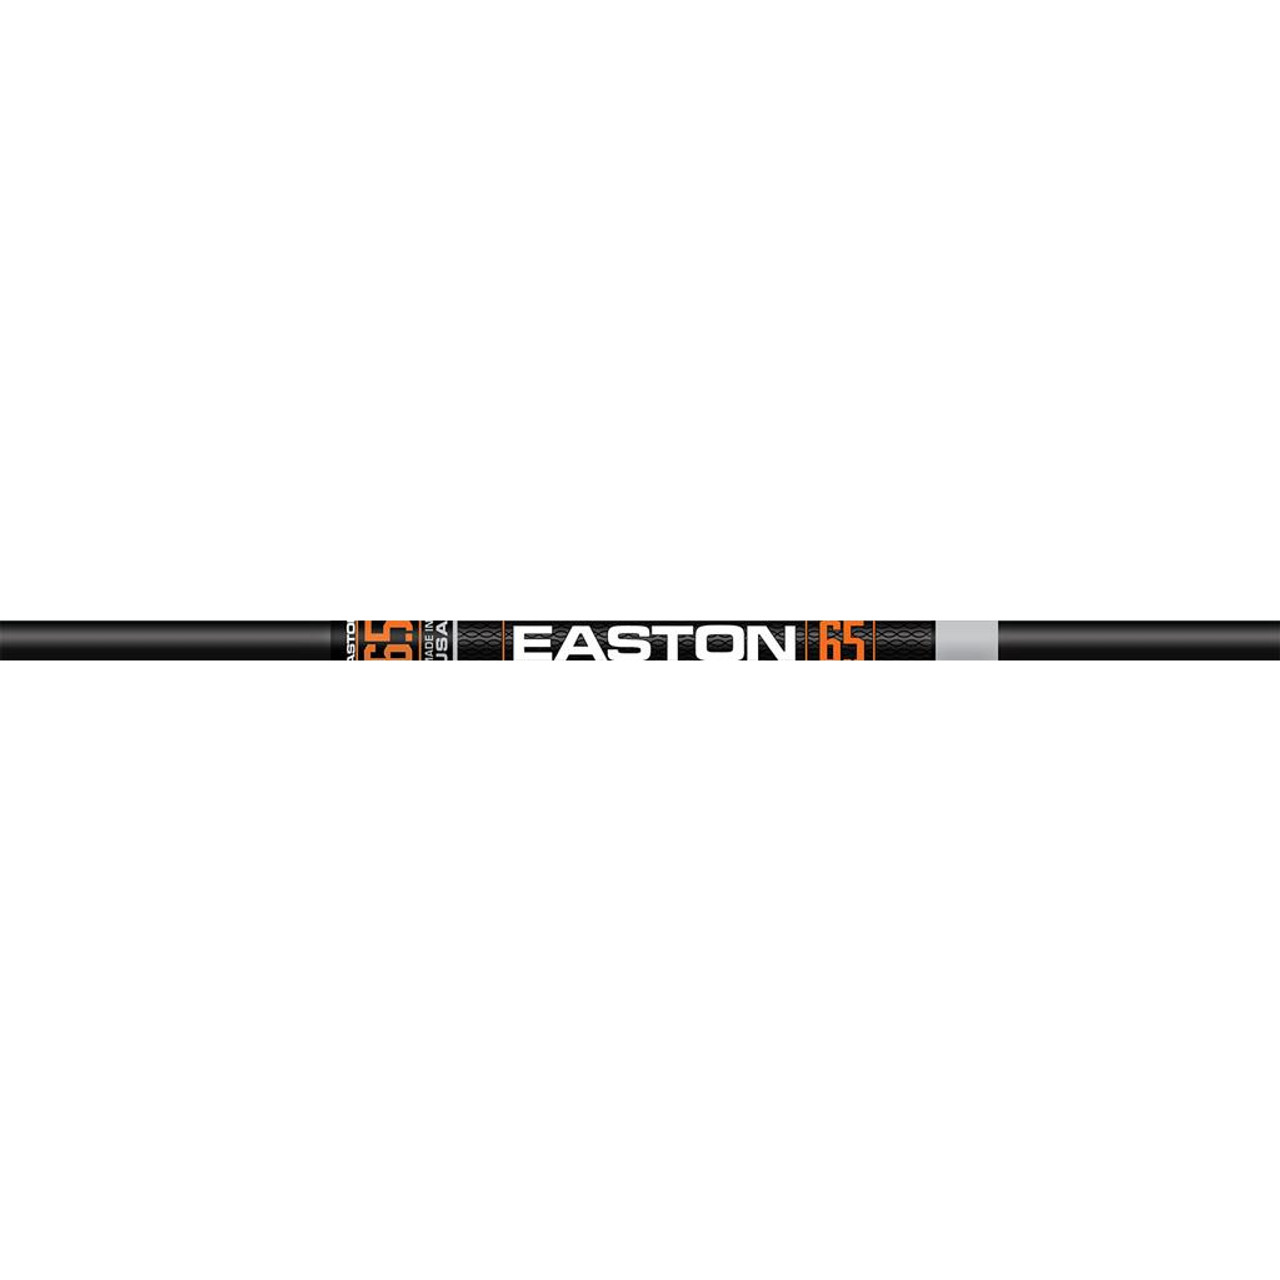 Easton - 6.5 Hunter Classic - 400 - Bare Shaft - 12 Pack